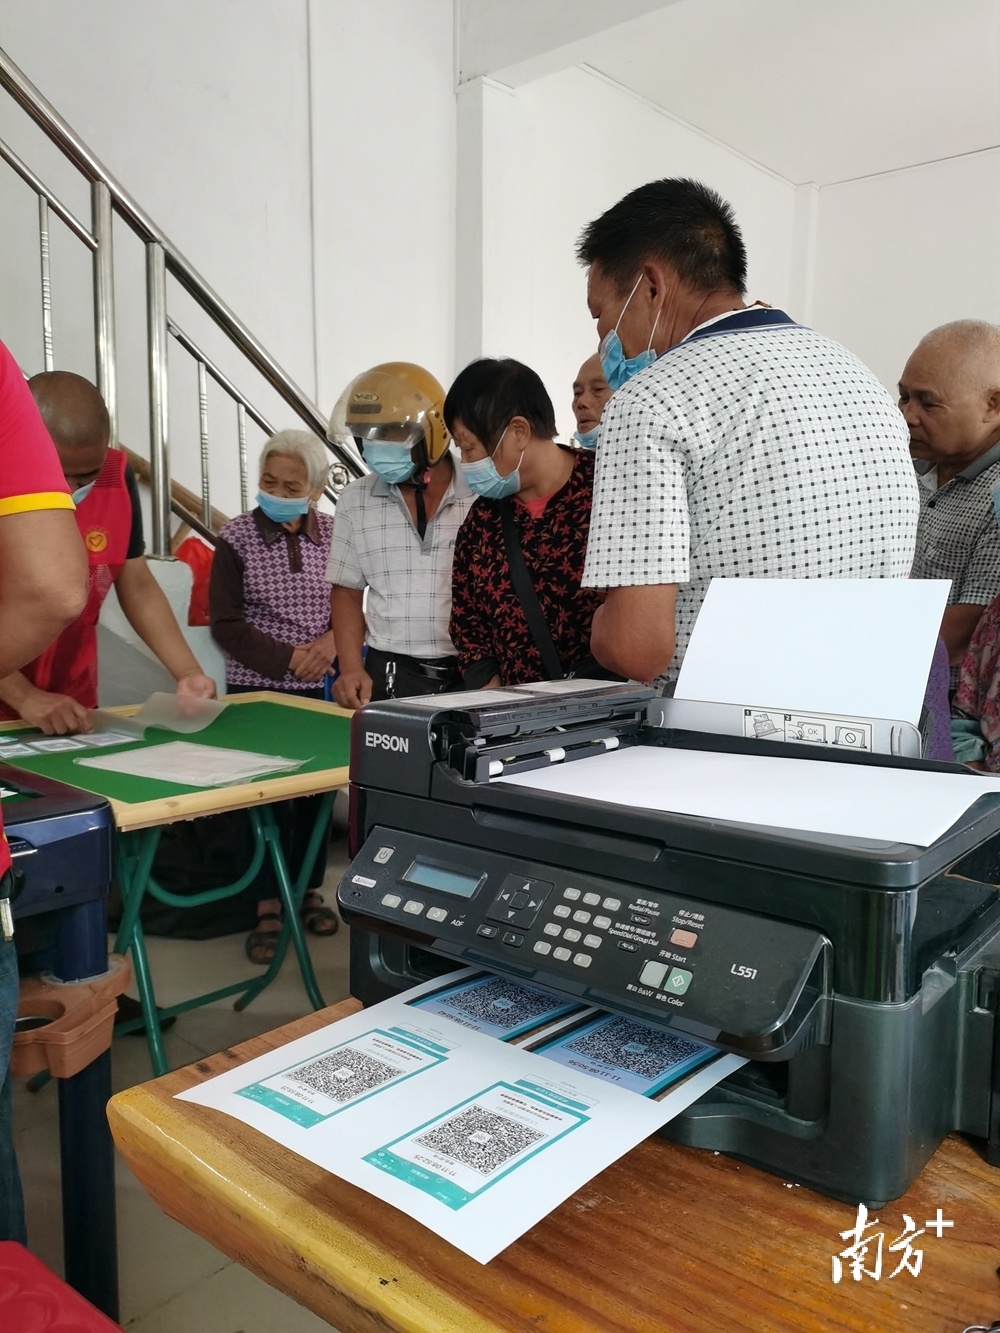 听到台前村委有老人被二维码问题困扰多日，东鹏陶瓷志愿者自带彩色打印机、过胶机等设备现场为老人家小孩打印二维码。